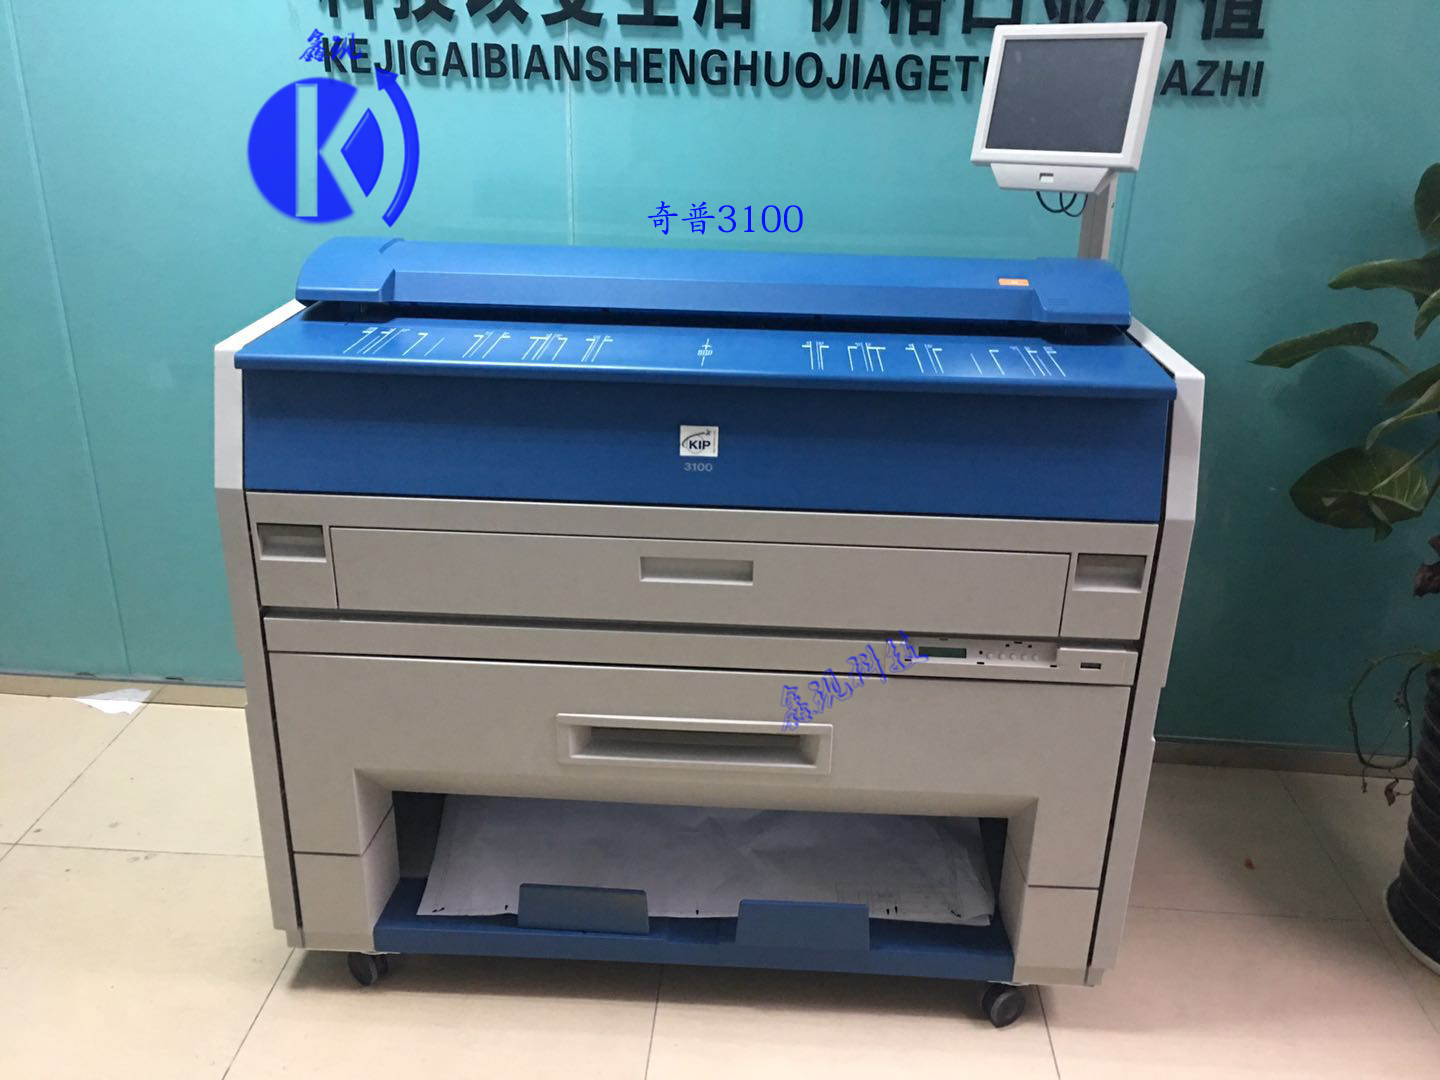 出售奇普3100二手工程复印机数码打印机激光蓝图机办公设备一体机-41000元  奇普KIP二手复印机激光蓝图机